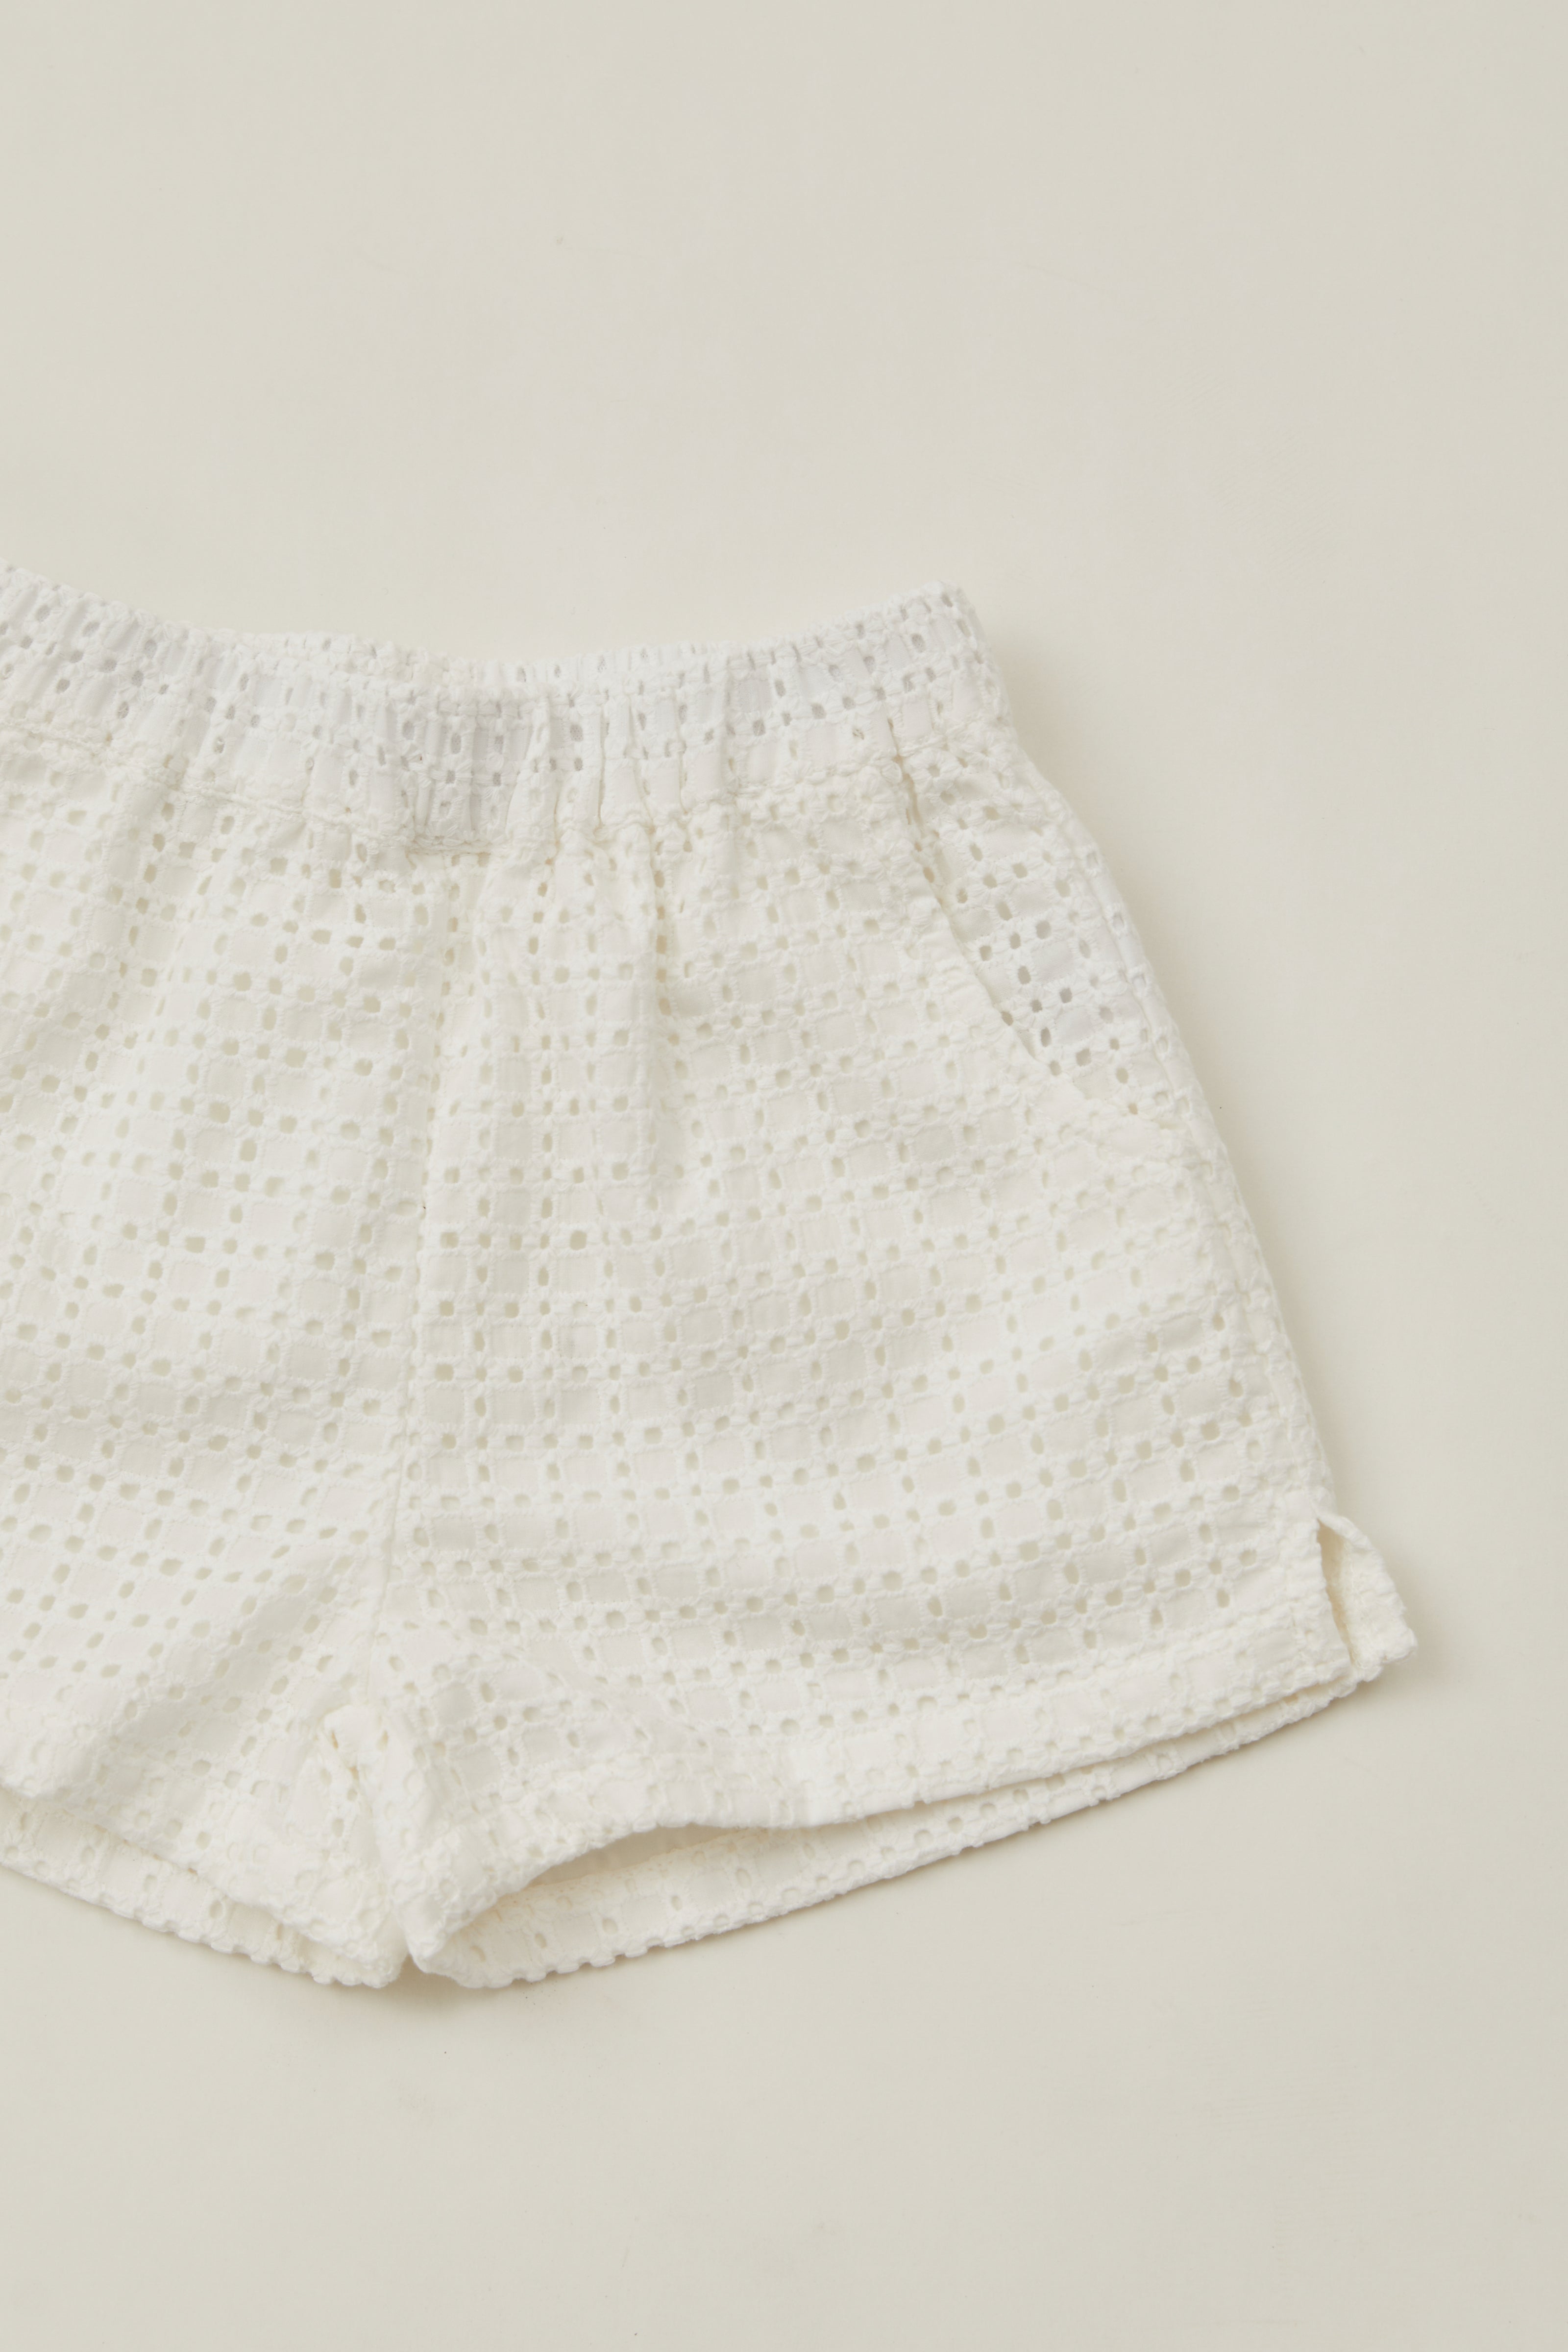 Mini Relaxed Shorts in Maha Crochet